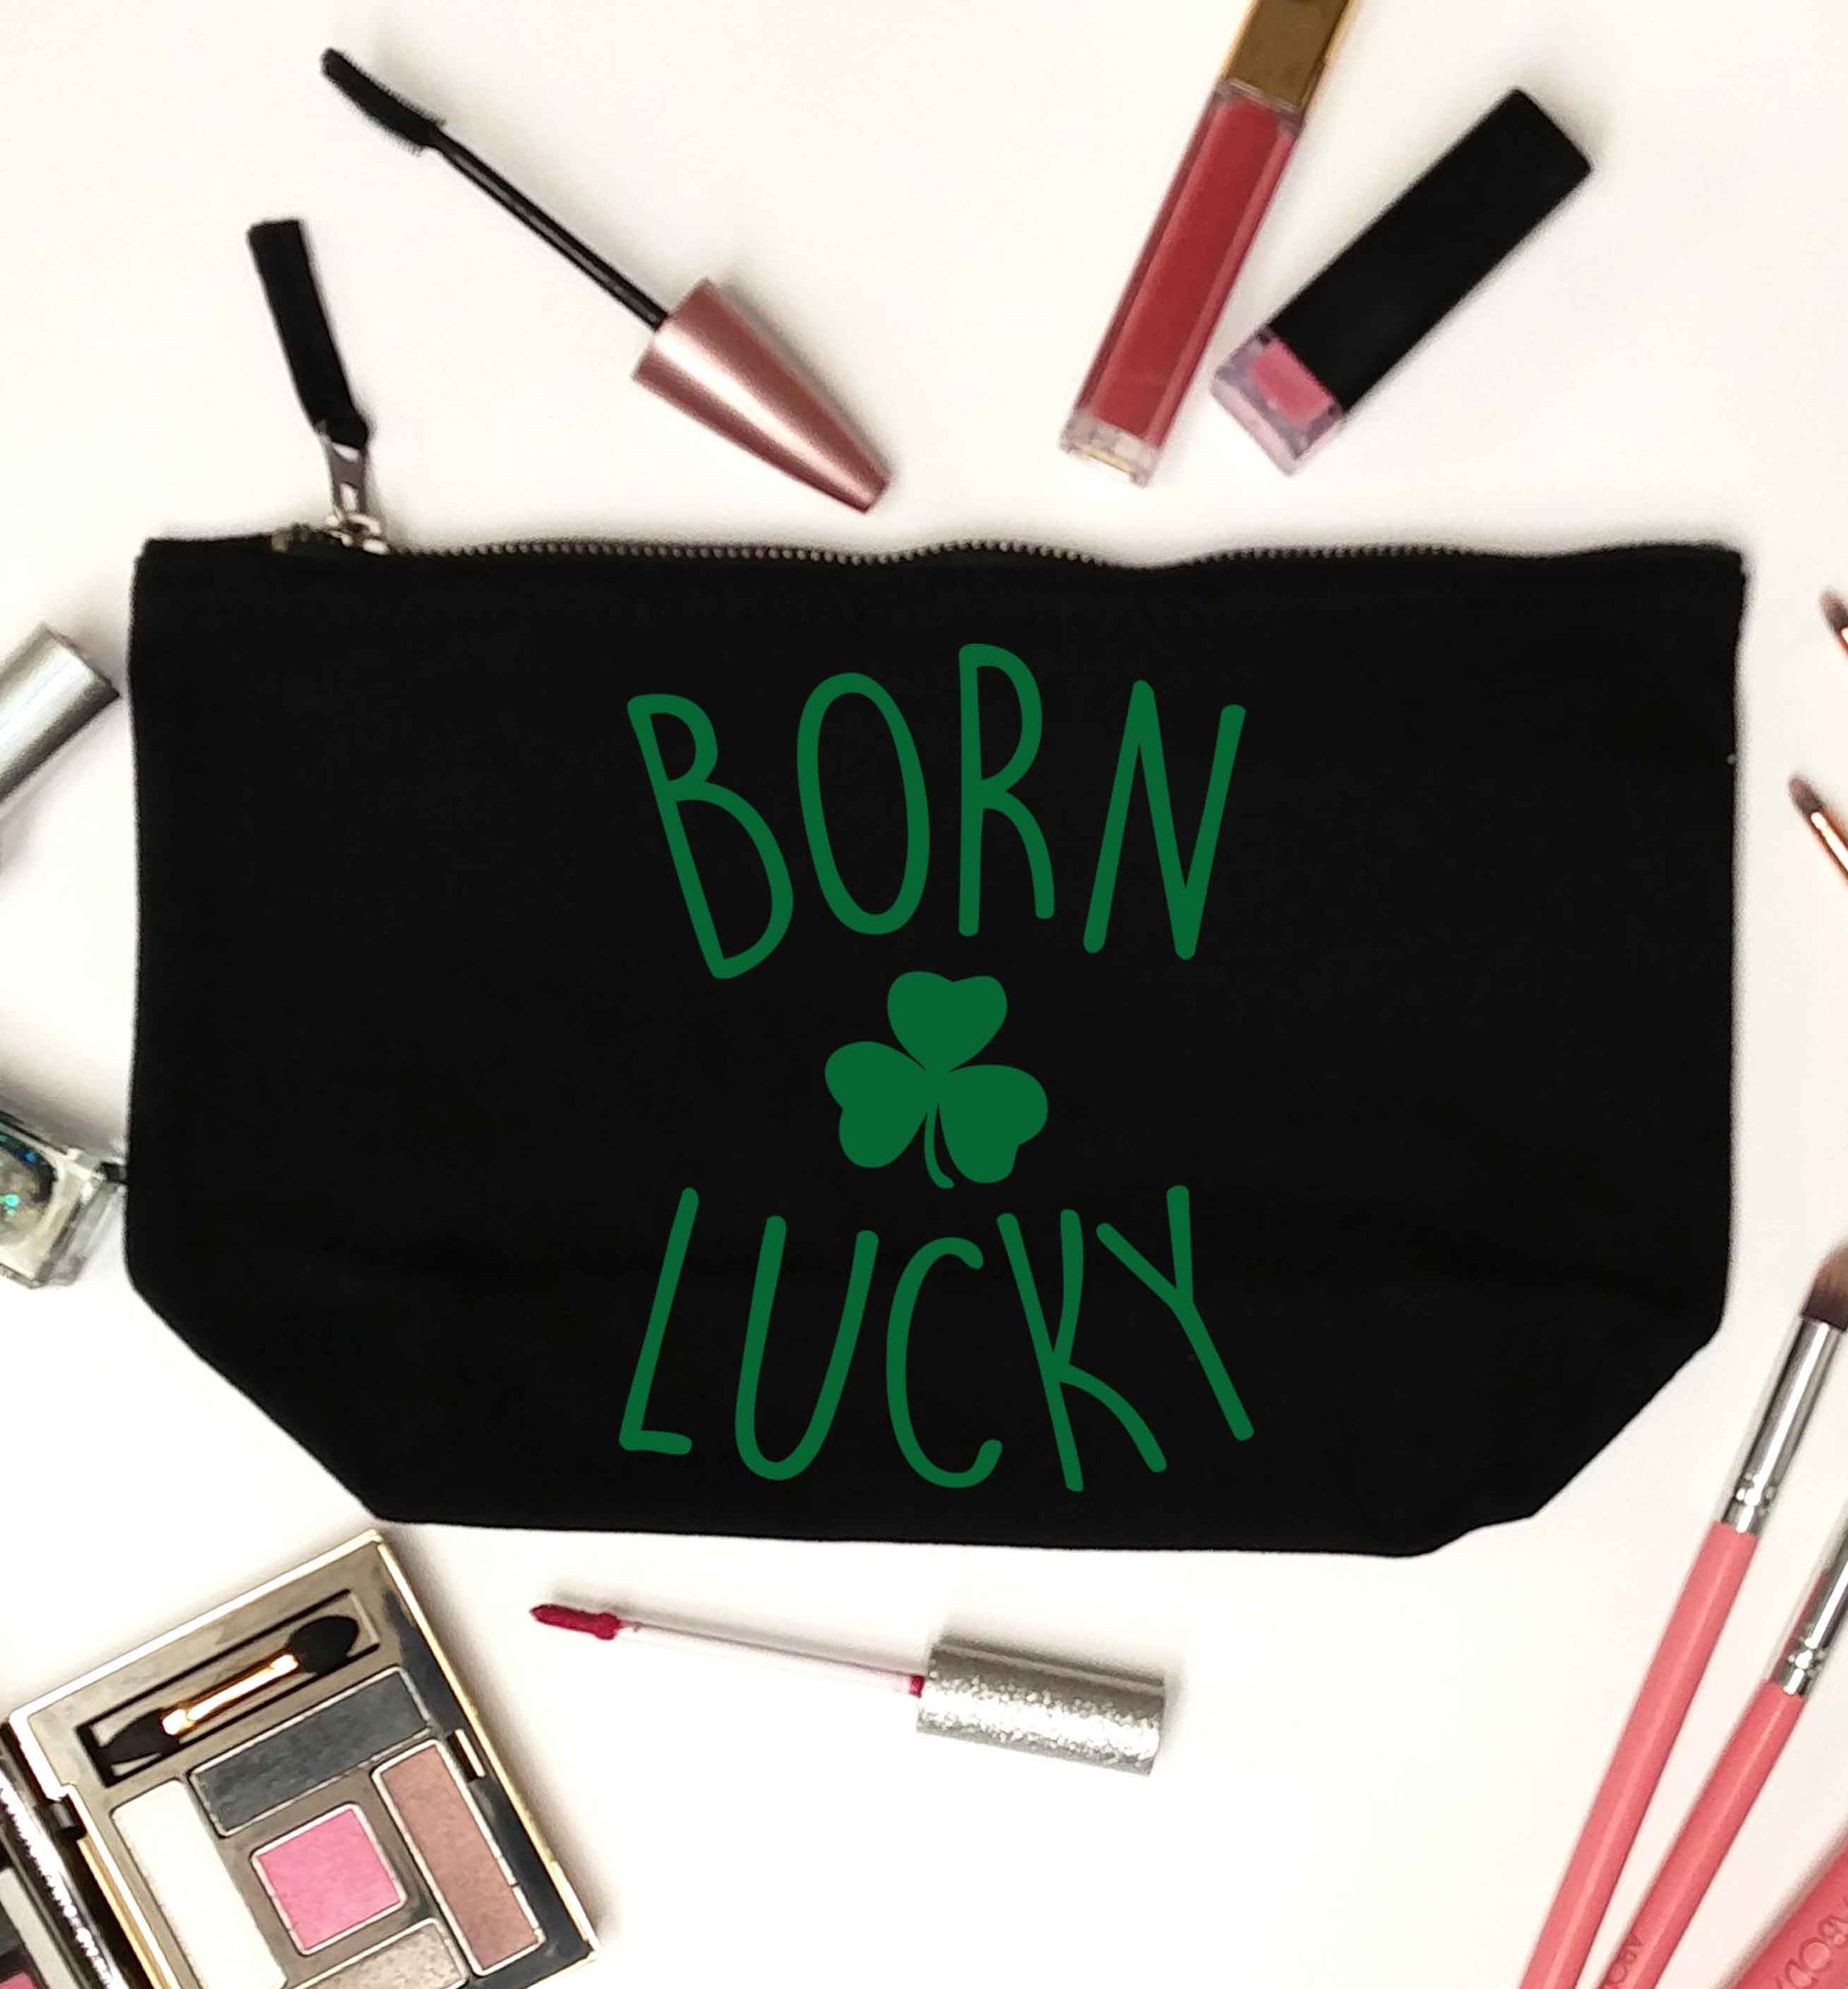  Born Lucky black makeup bag